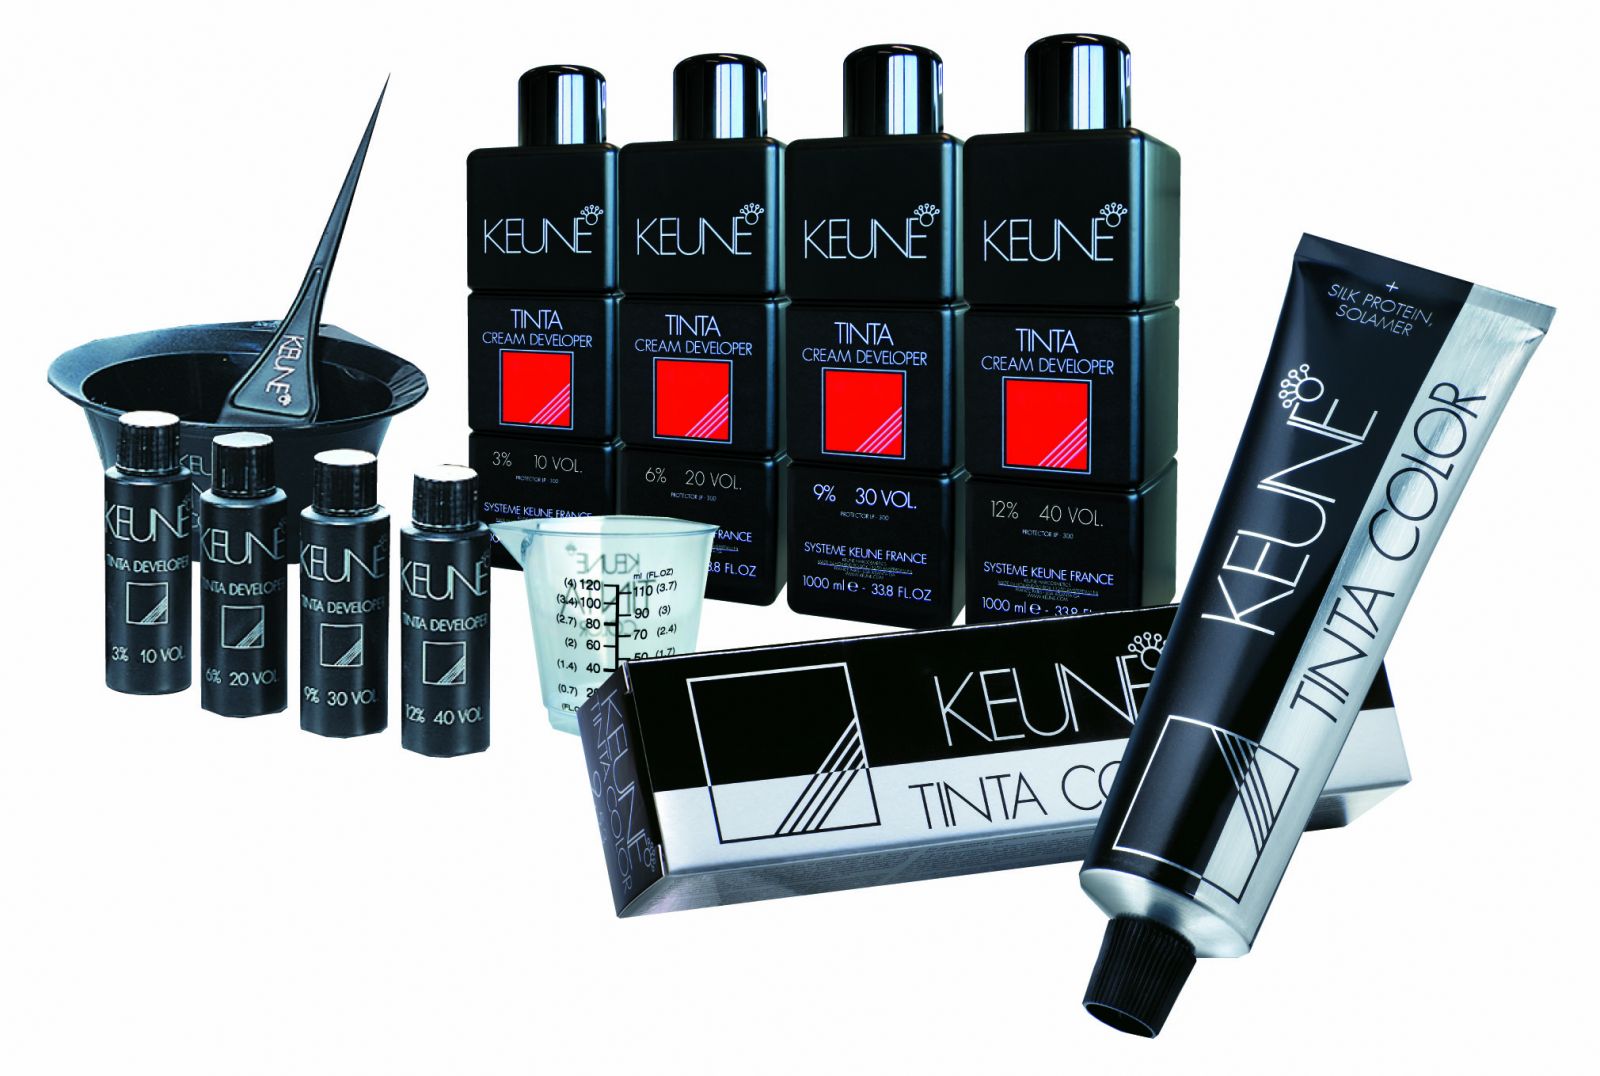 Bảng màu tóc Keune Hair Color với nhiều lựa chọn tuyệt đẹp như đỏ, nâu, đen, xám, của Keune sẽ giúp bạn thỏa sức sáng tạo với mái tóc của mình. Hãy tham khảo bảng màu tóc Keune Hair Color để tìm kiếm gam màu hoàn hảo cho phong cách của bạn.